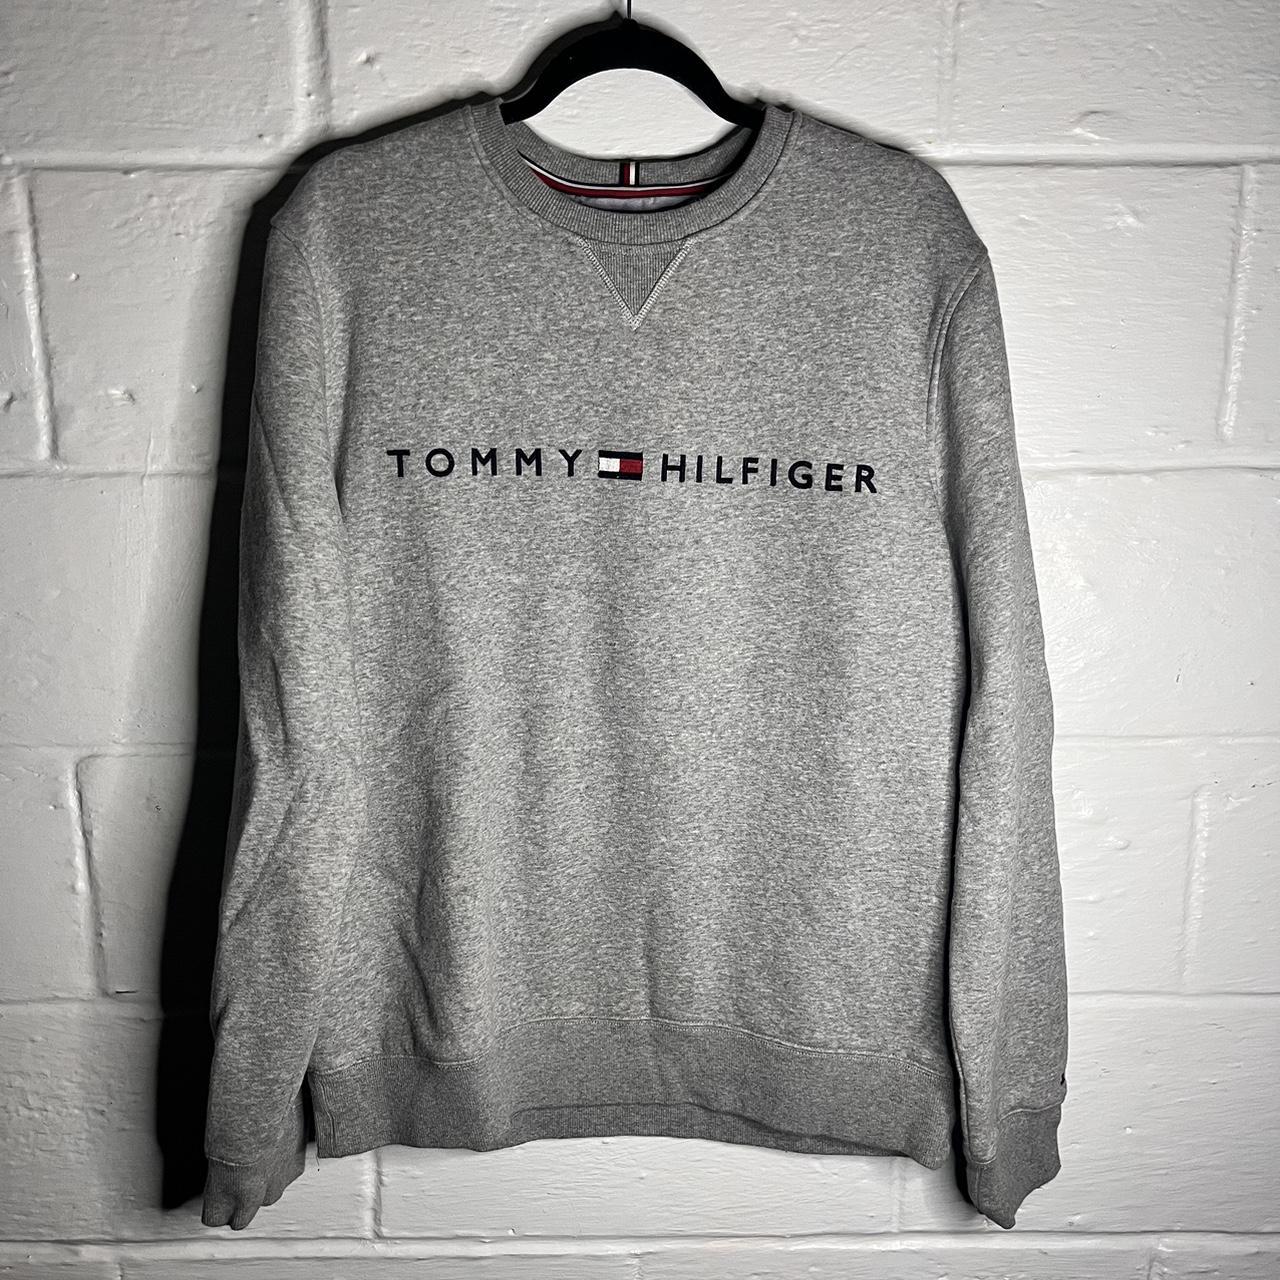 Tommy Hilfiger Sweatshirt (Thick) 50% Cotton 50%... - Depop